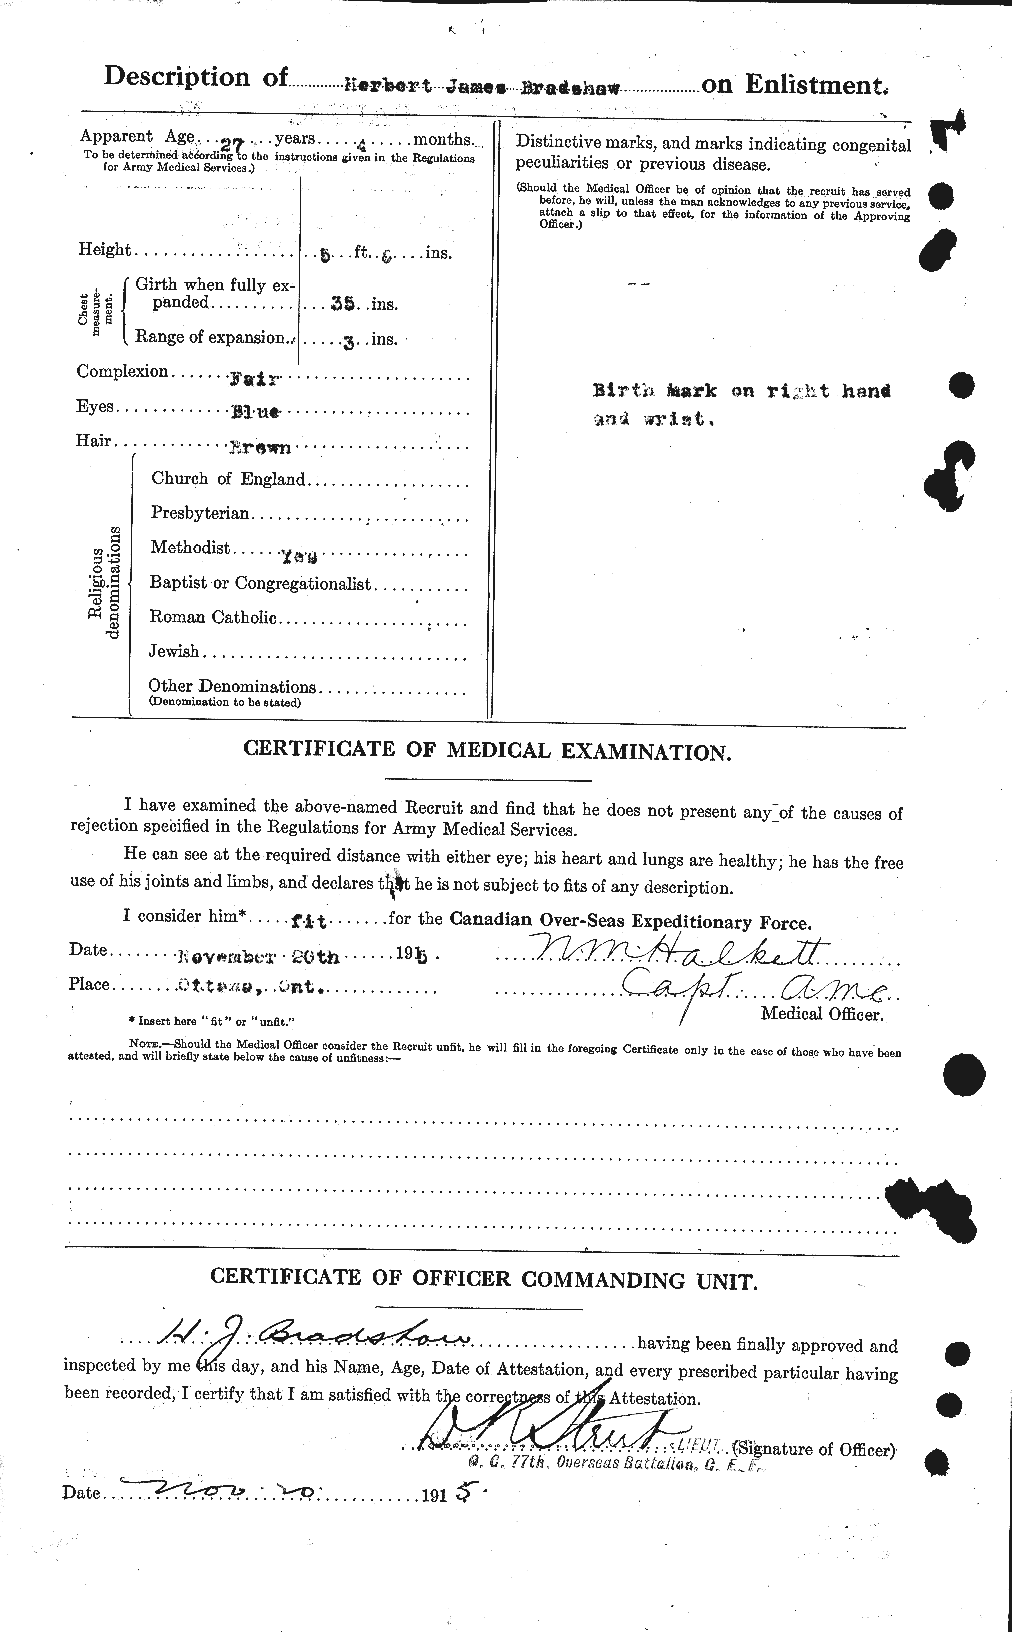 Dossiers du Personnel de la Première Guerre mondiale - CEC 256638b